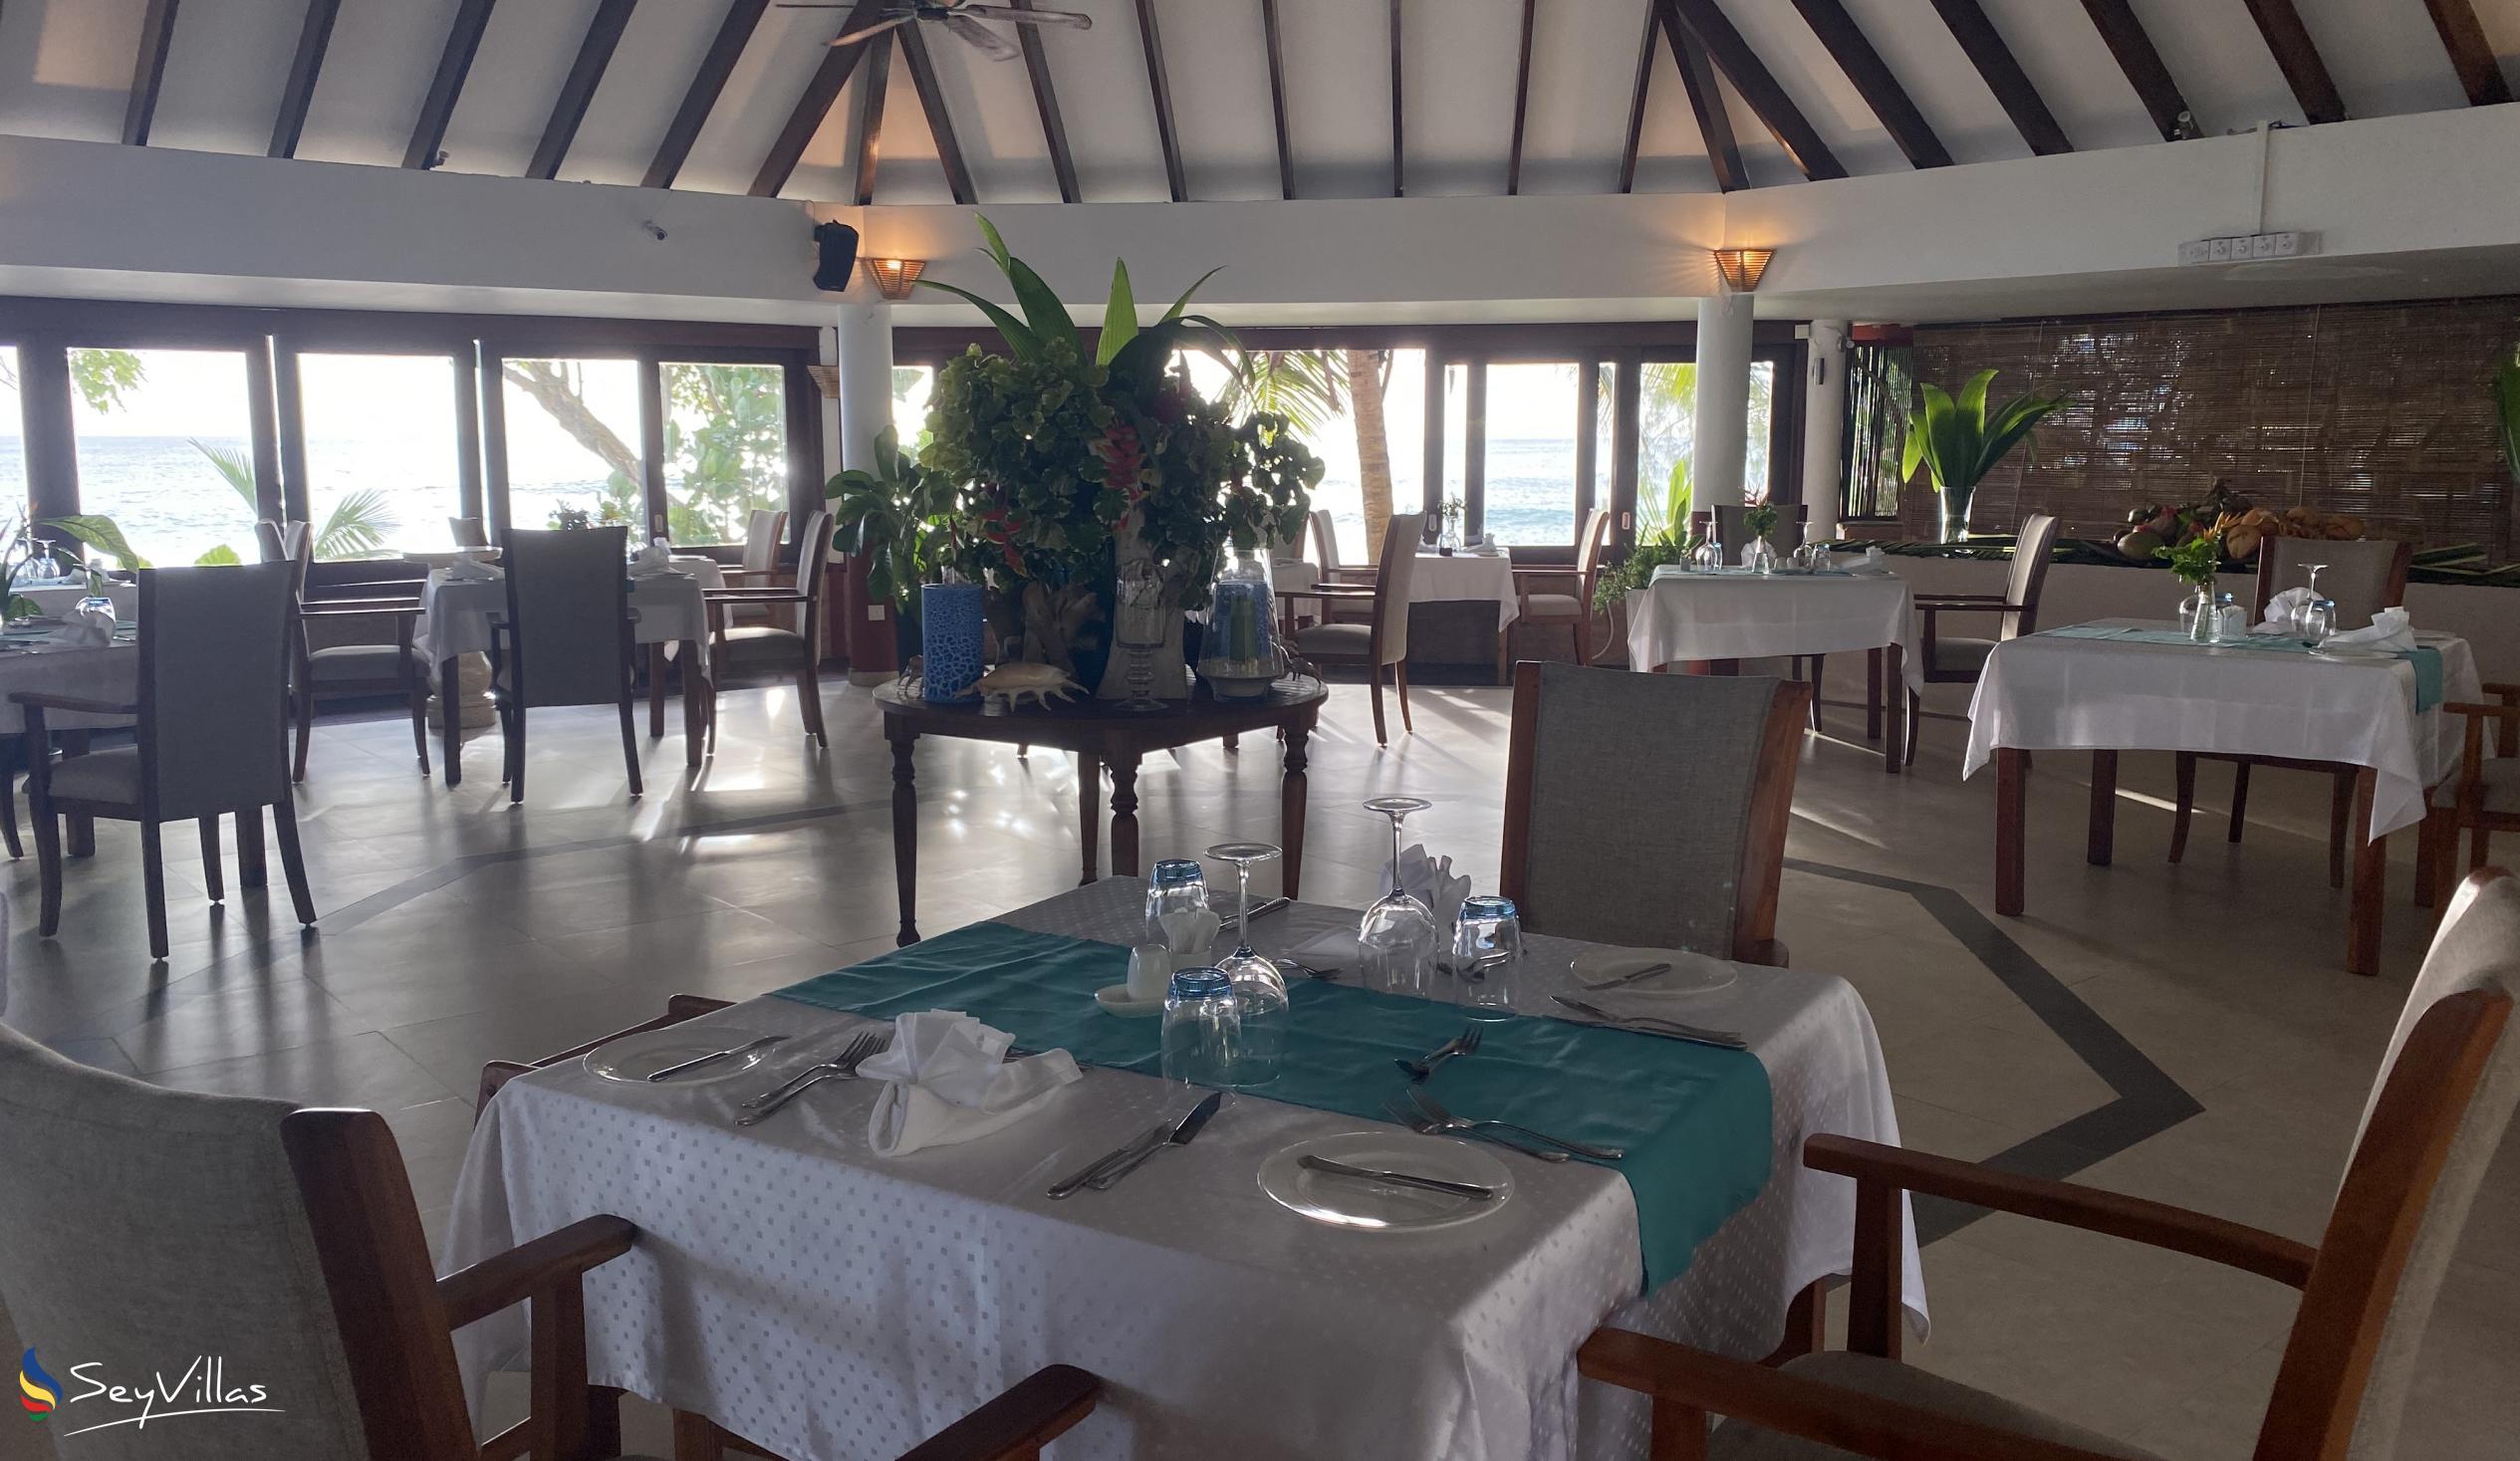 Foto 12: Castello Beach Hotel - Innenbereich - Praslin (Seychellen)